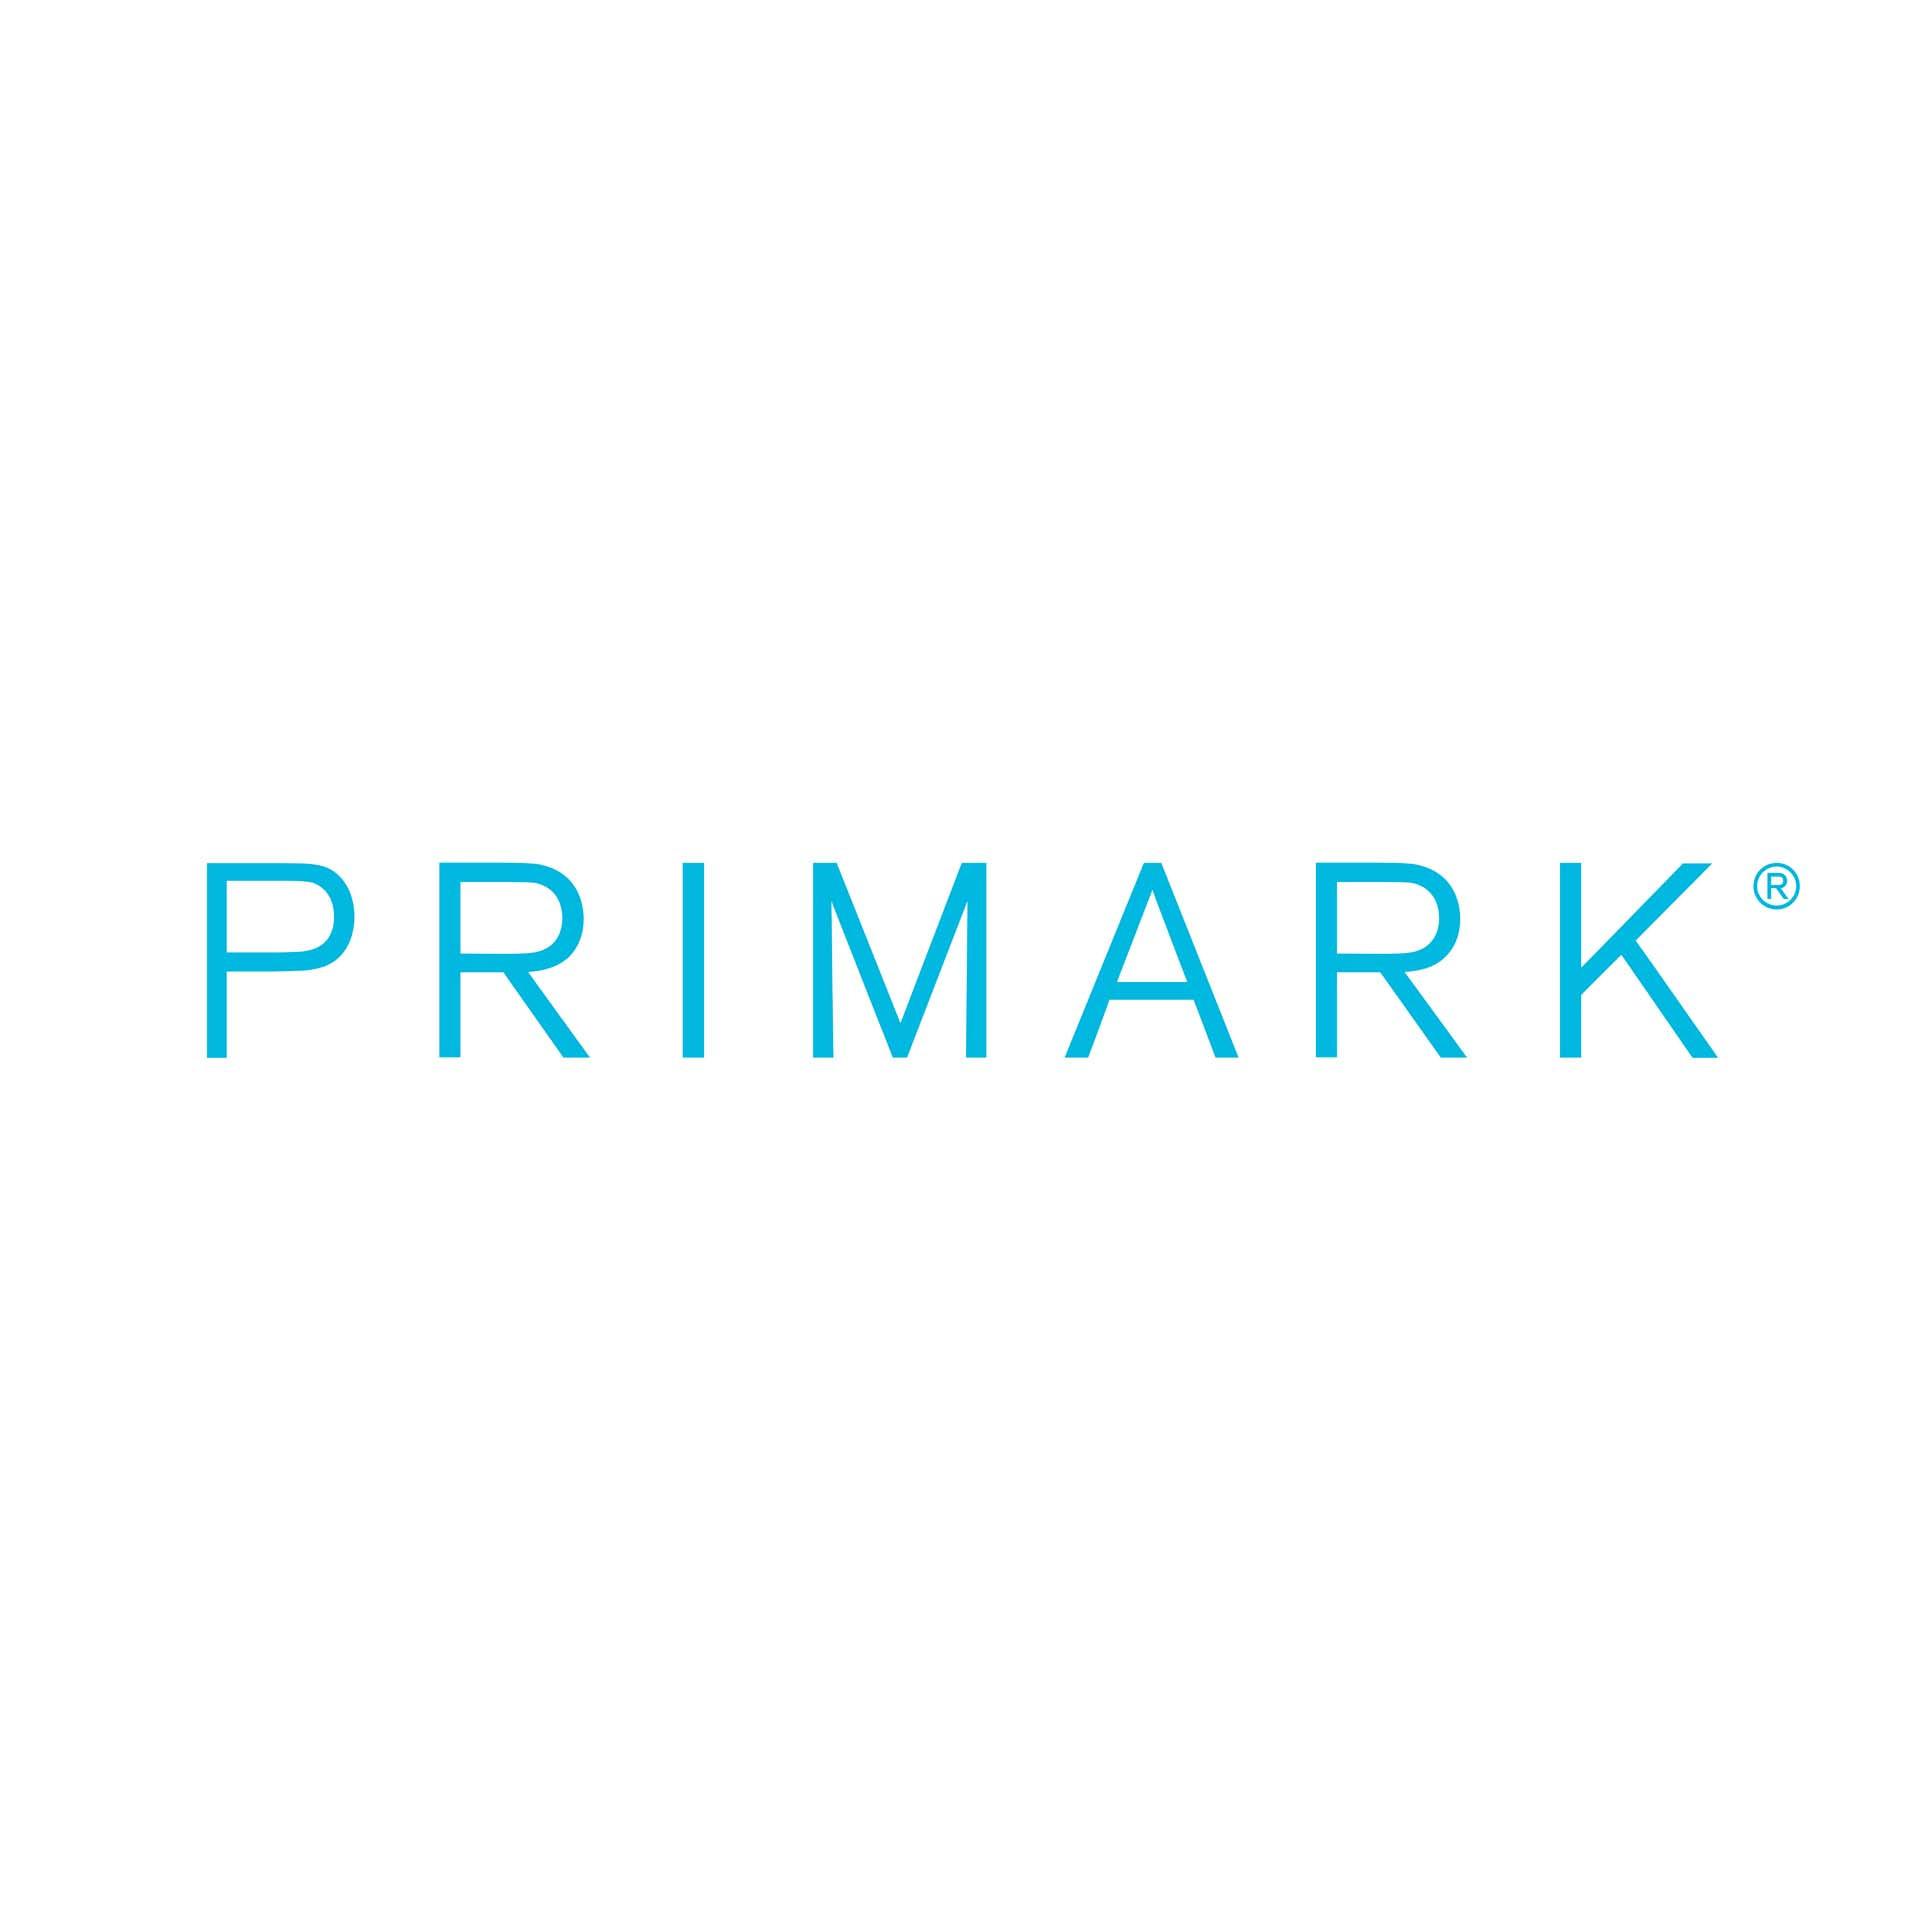 Logotip družbe Primark